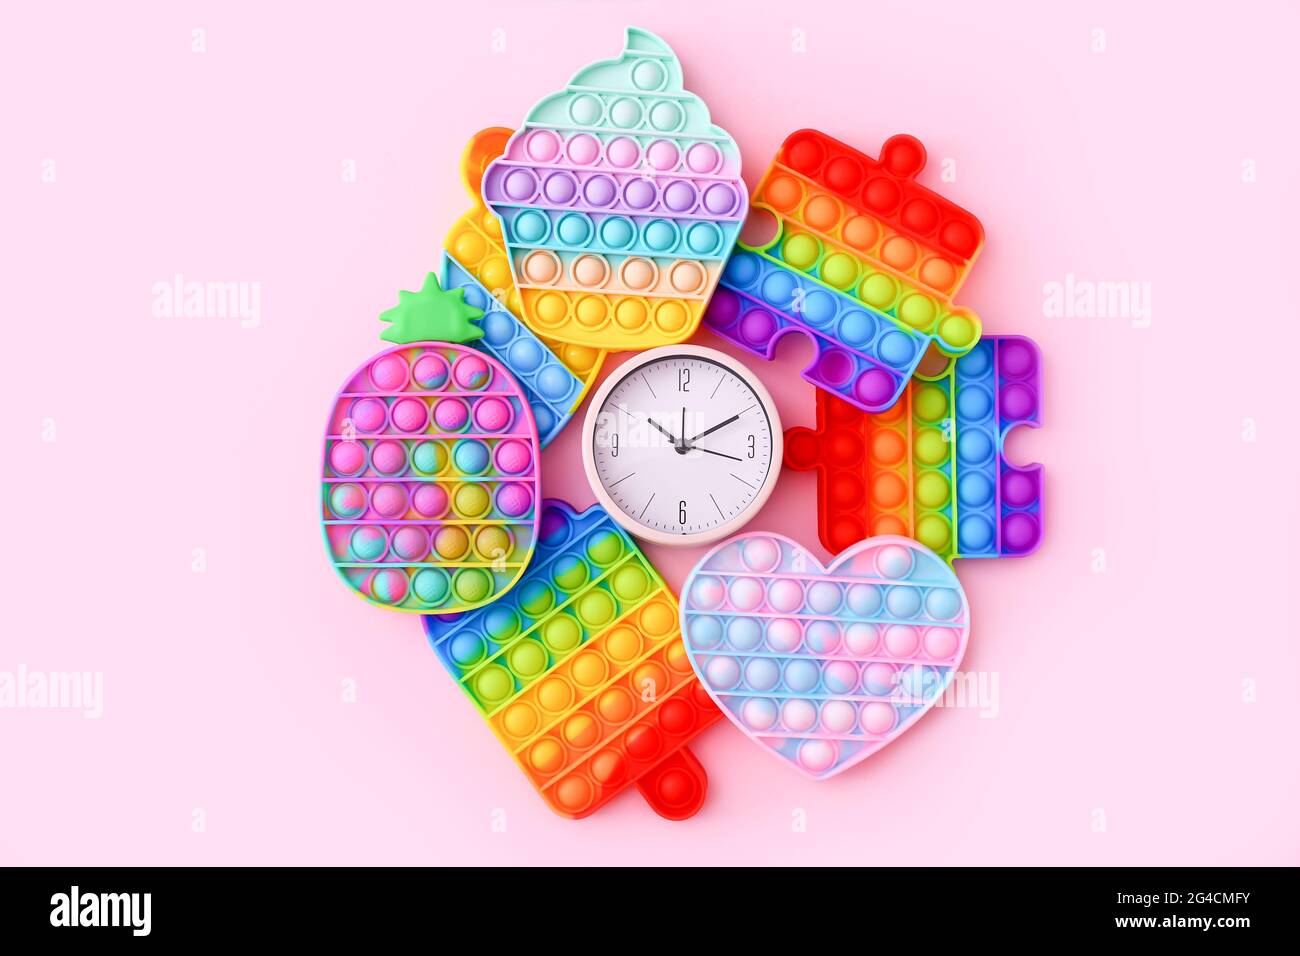 Farbenfrohe Antistress-Sinnesspielzeug mit Uhr auf rosa Hintergrund Stockfoto